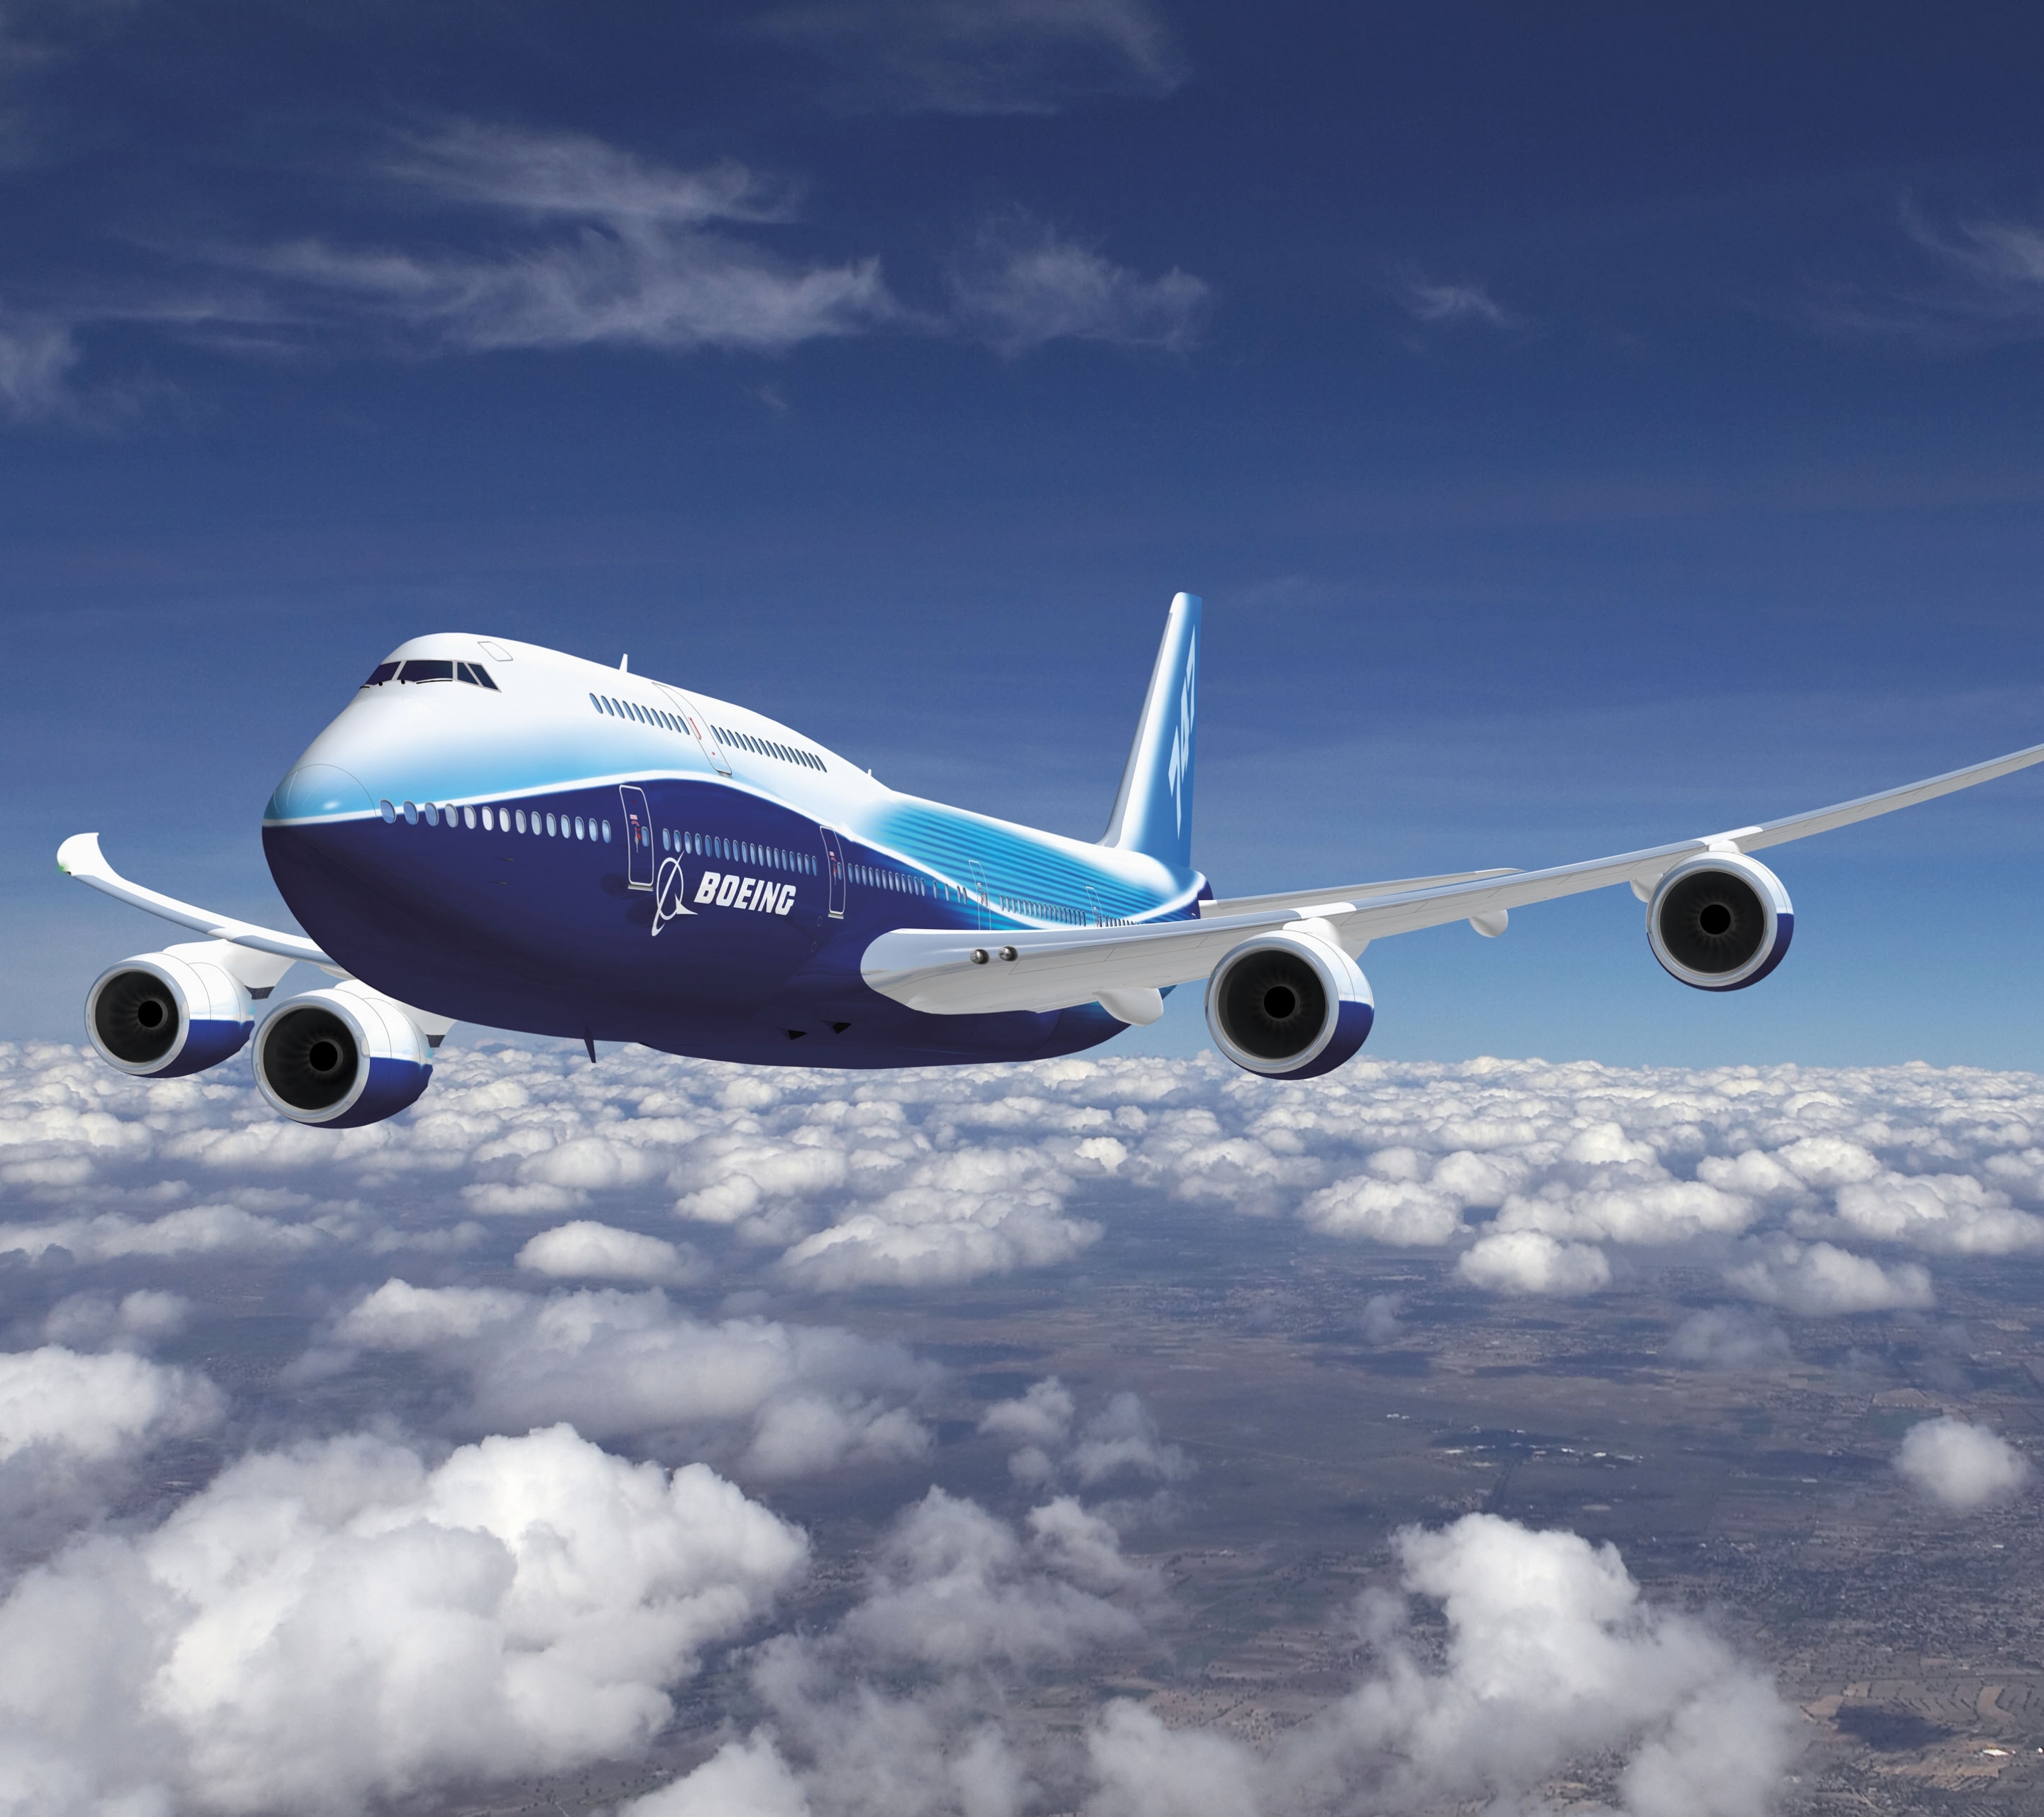 Скачать обои бесплатно Облака, Самолет, Облако, Самолёты, Транспортные Средства, Боинг 747 картинка на рабочий стол ПК